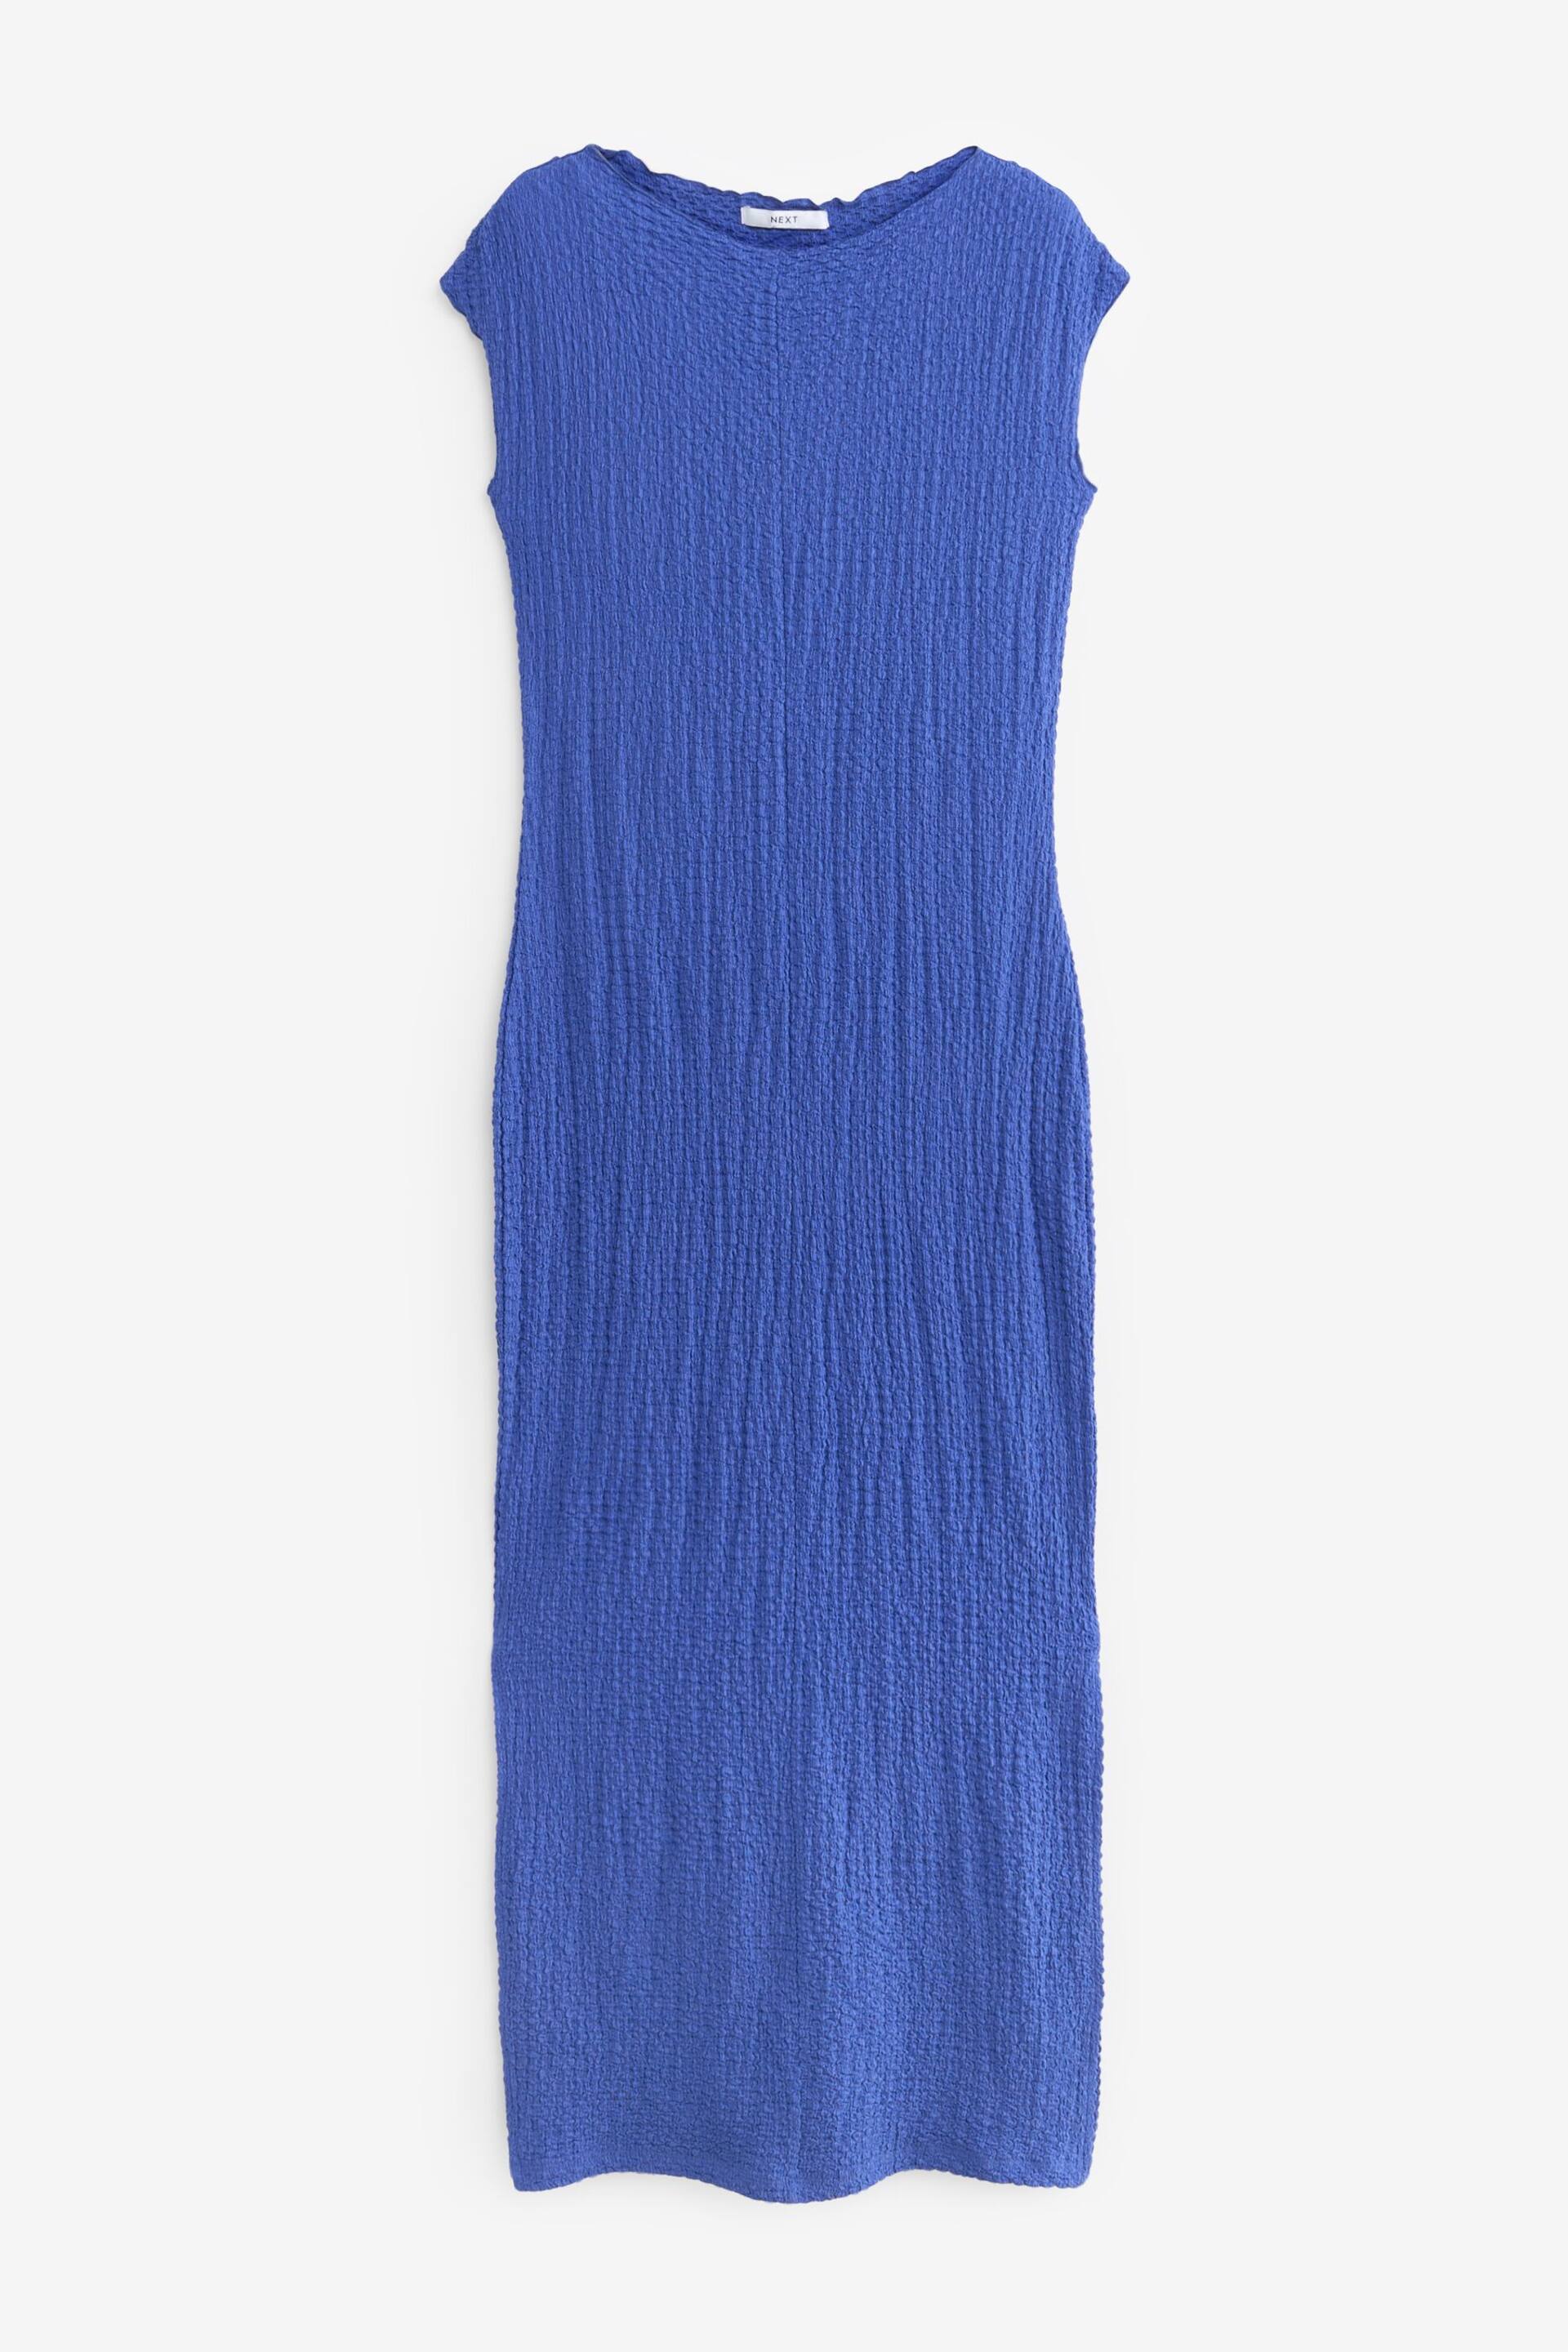 Cobalt Blue Short Sleeve Textured Column Jersey Dress - Image 6 of 7